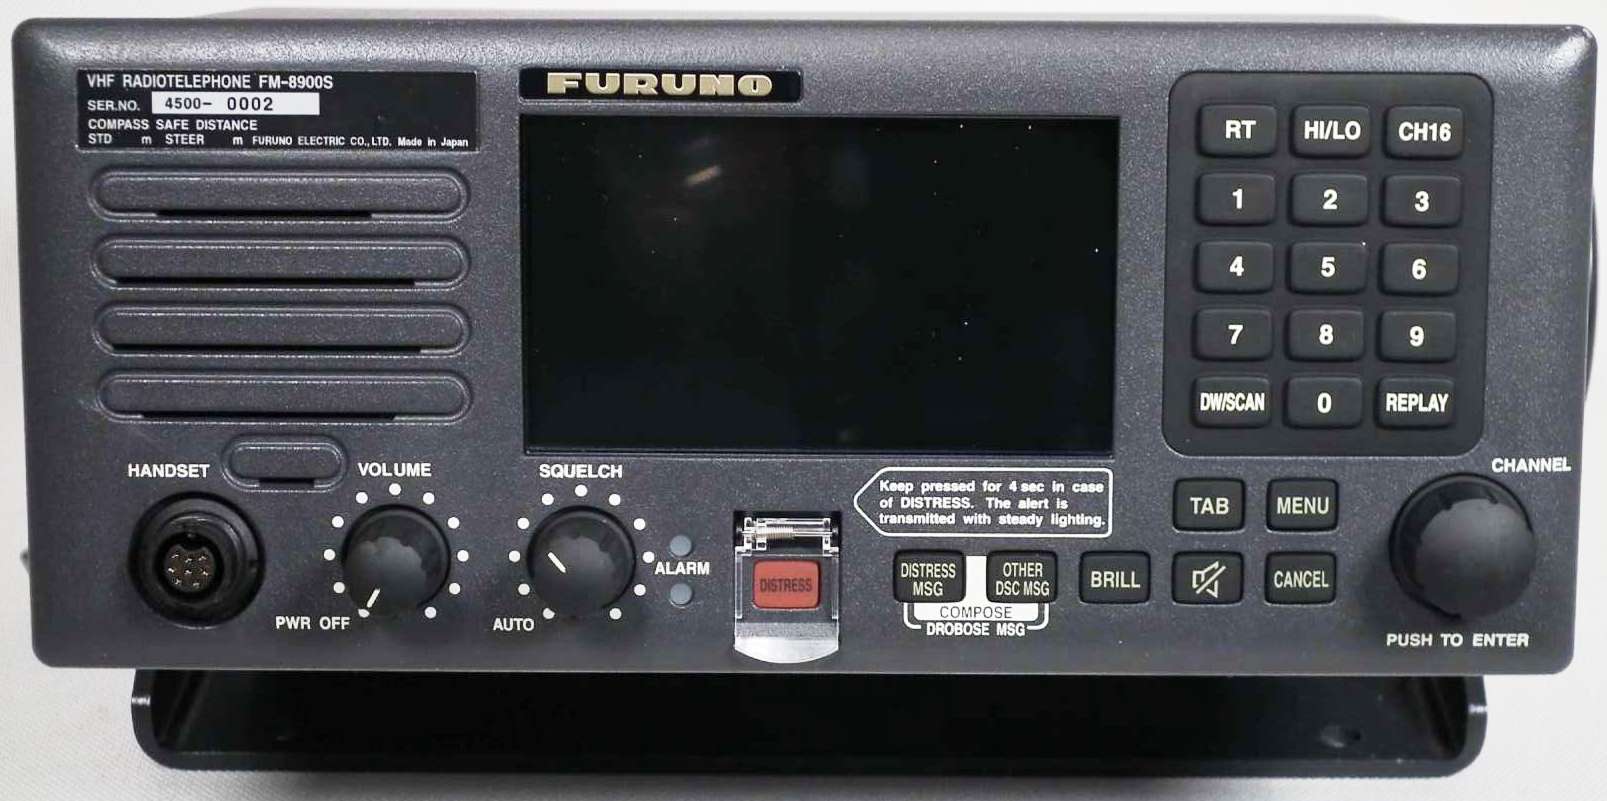 Укв на судах. Furuno fm-8900. Fm-8900s. Цив радиоустановка Furuno. Furuno fm-8500.